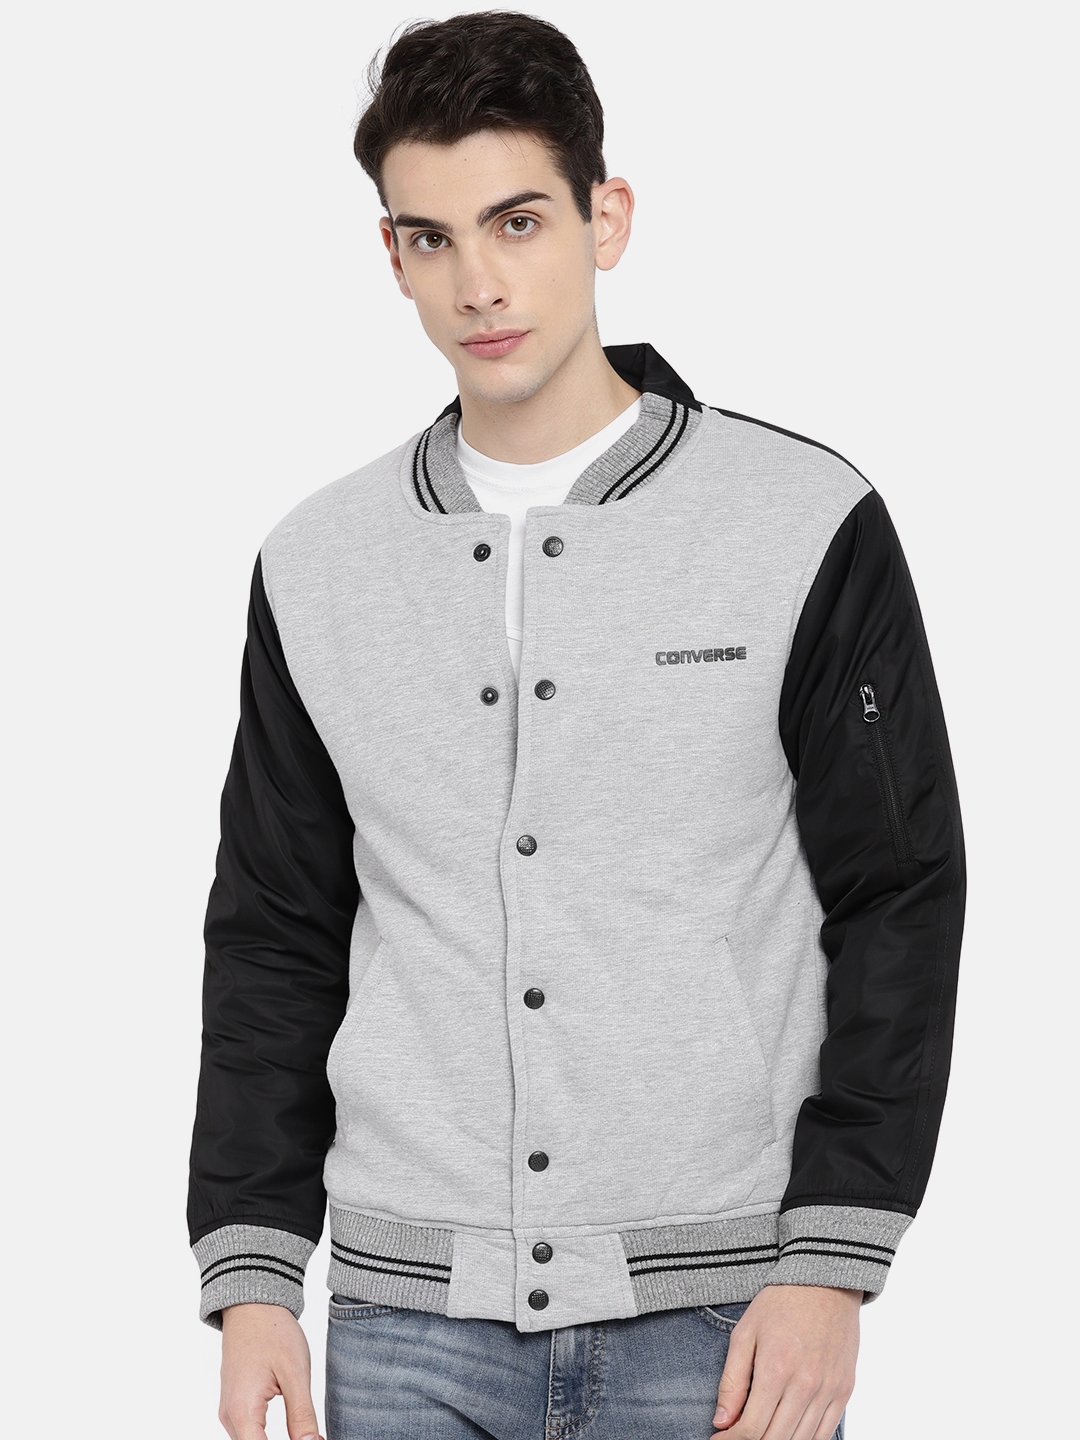 converse jacket grey